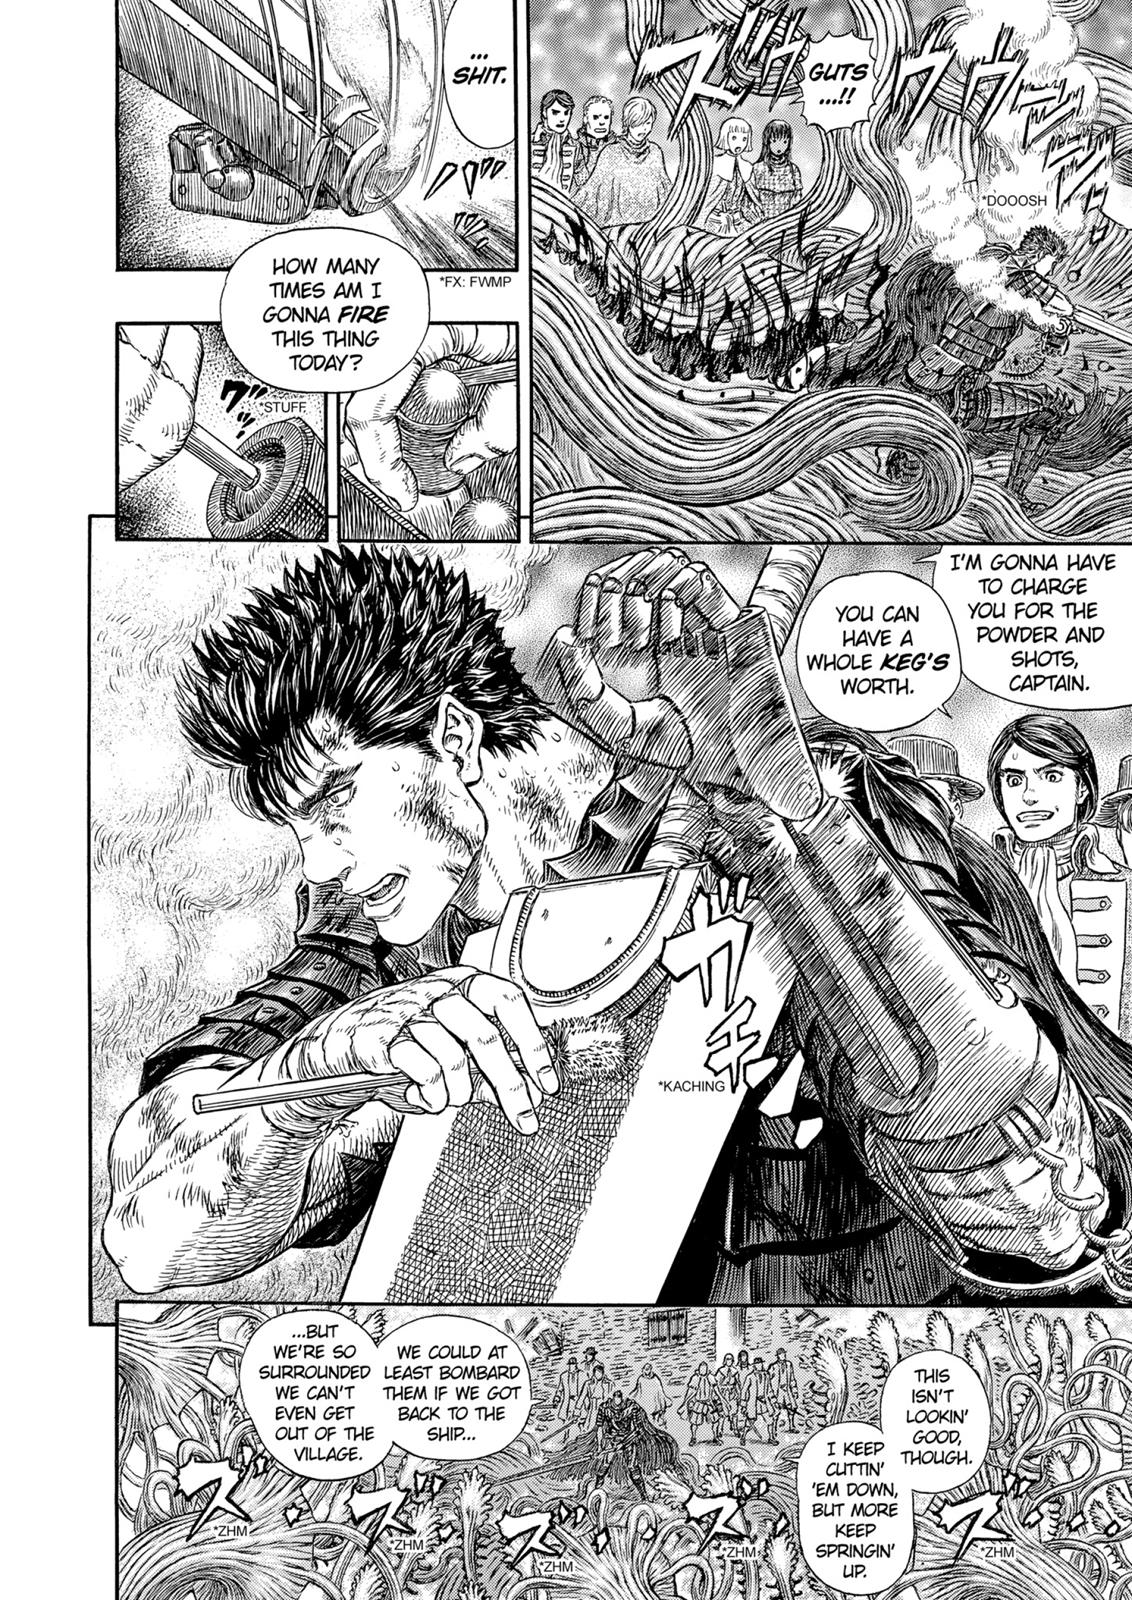 Berserk Manga Chapter 314 image 18